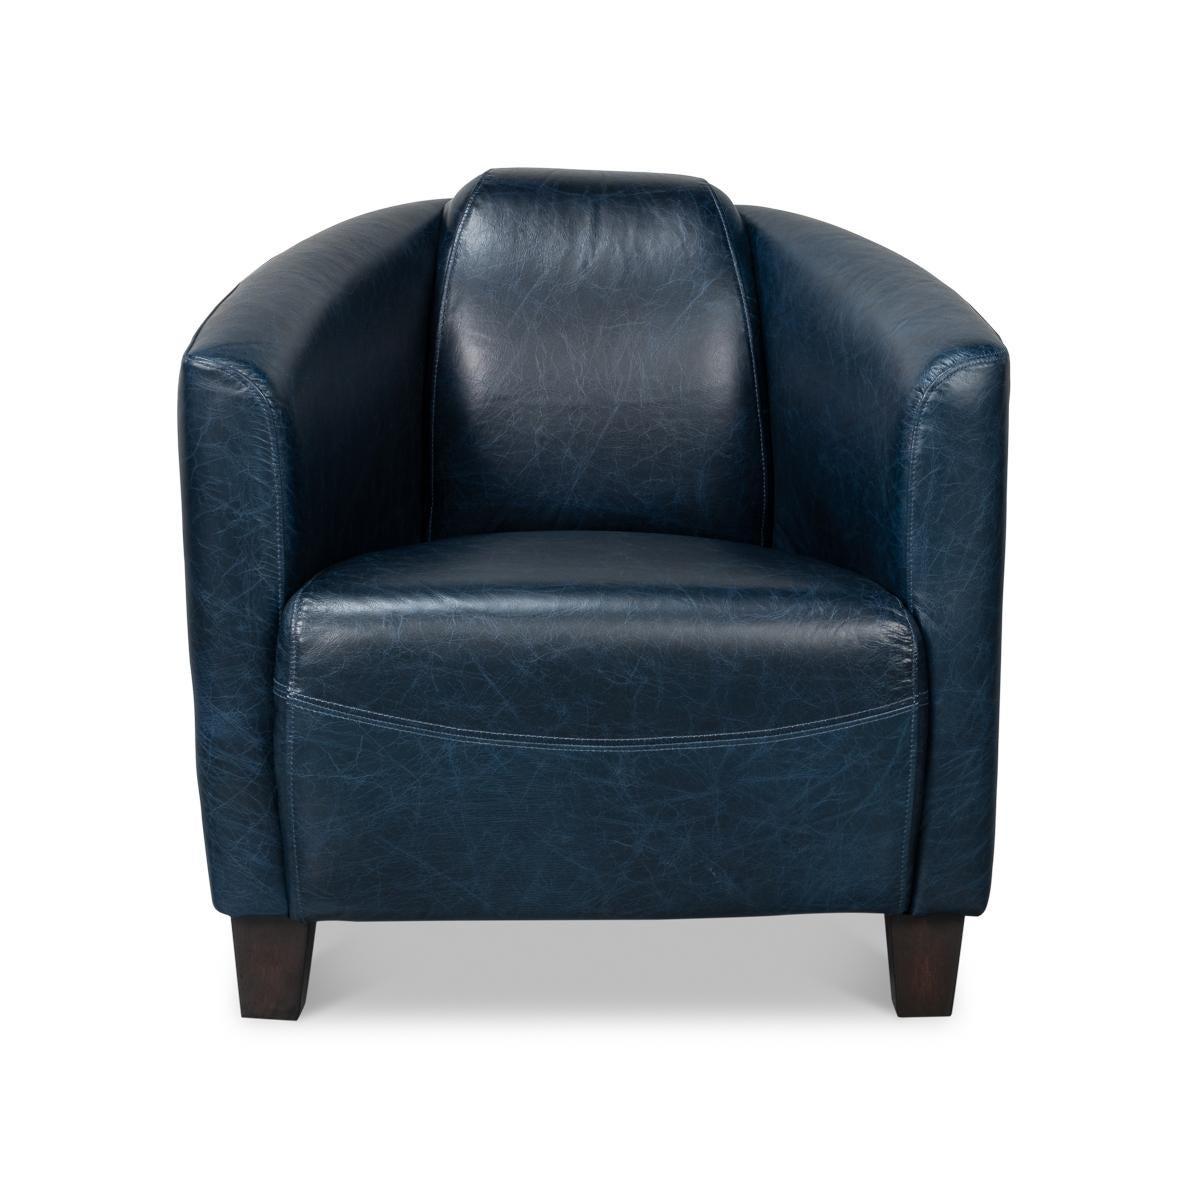 Dieser stilvolle und bequeme Sessel aus luxuriösem, hochwertigem Leder in einem wunderschönen Blauton ist perfekt für Ihr DEN, Ihre Bibliothek oder Ihr Wohnzimmer.
Farbabweichungen sind bei altem Leder üblich und akzeptabel.
Abmessungen: 28